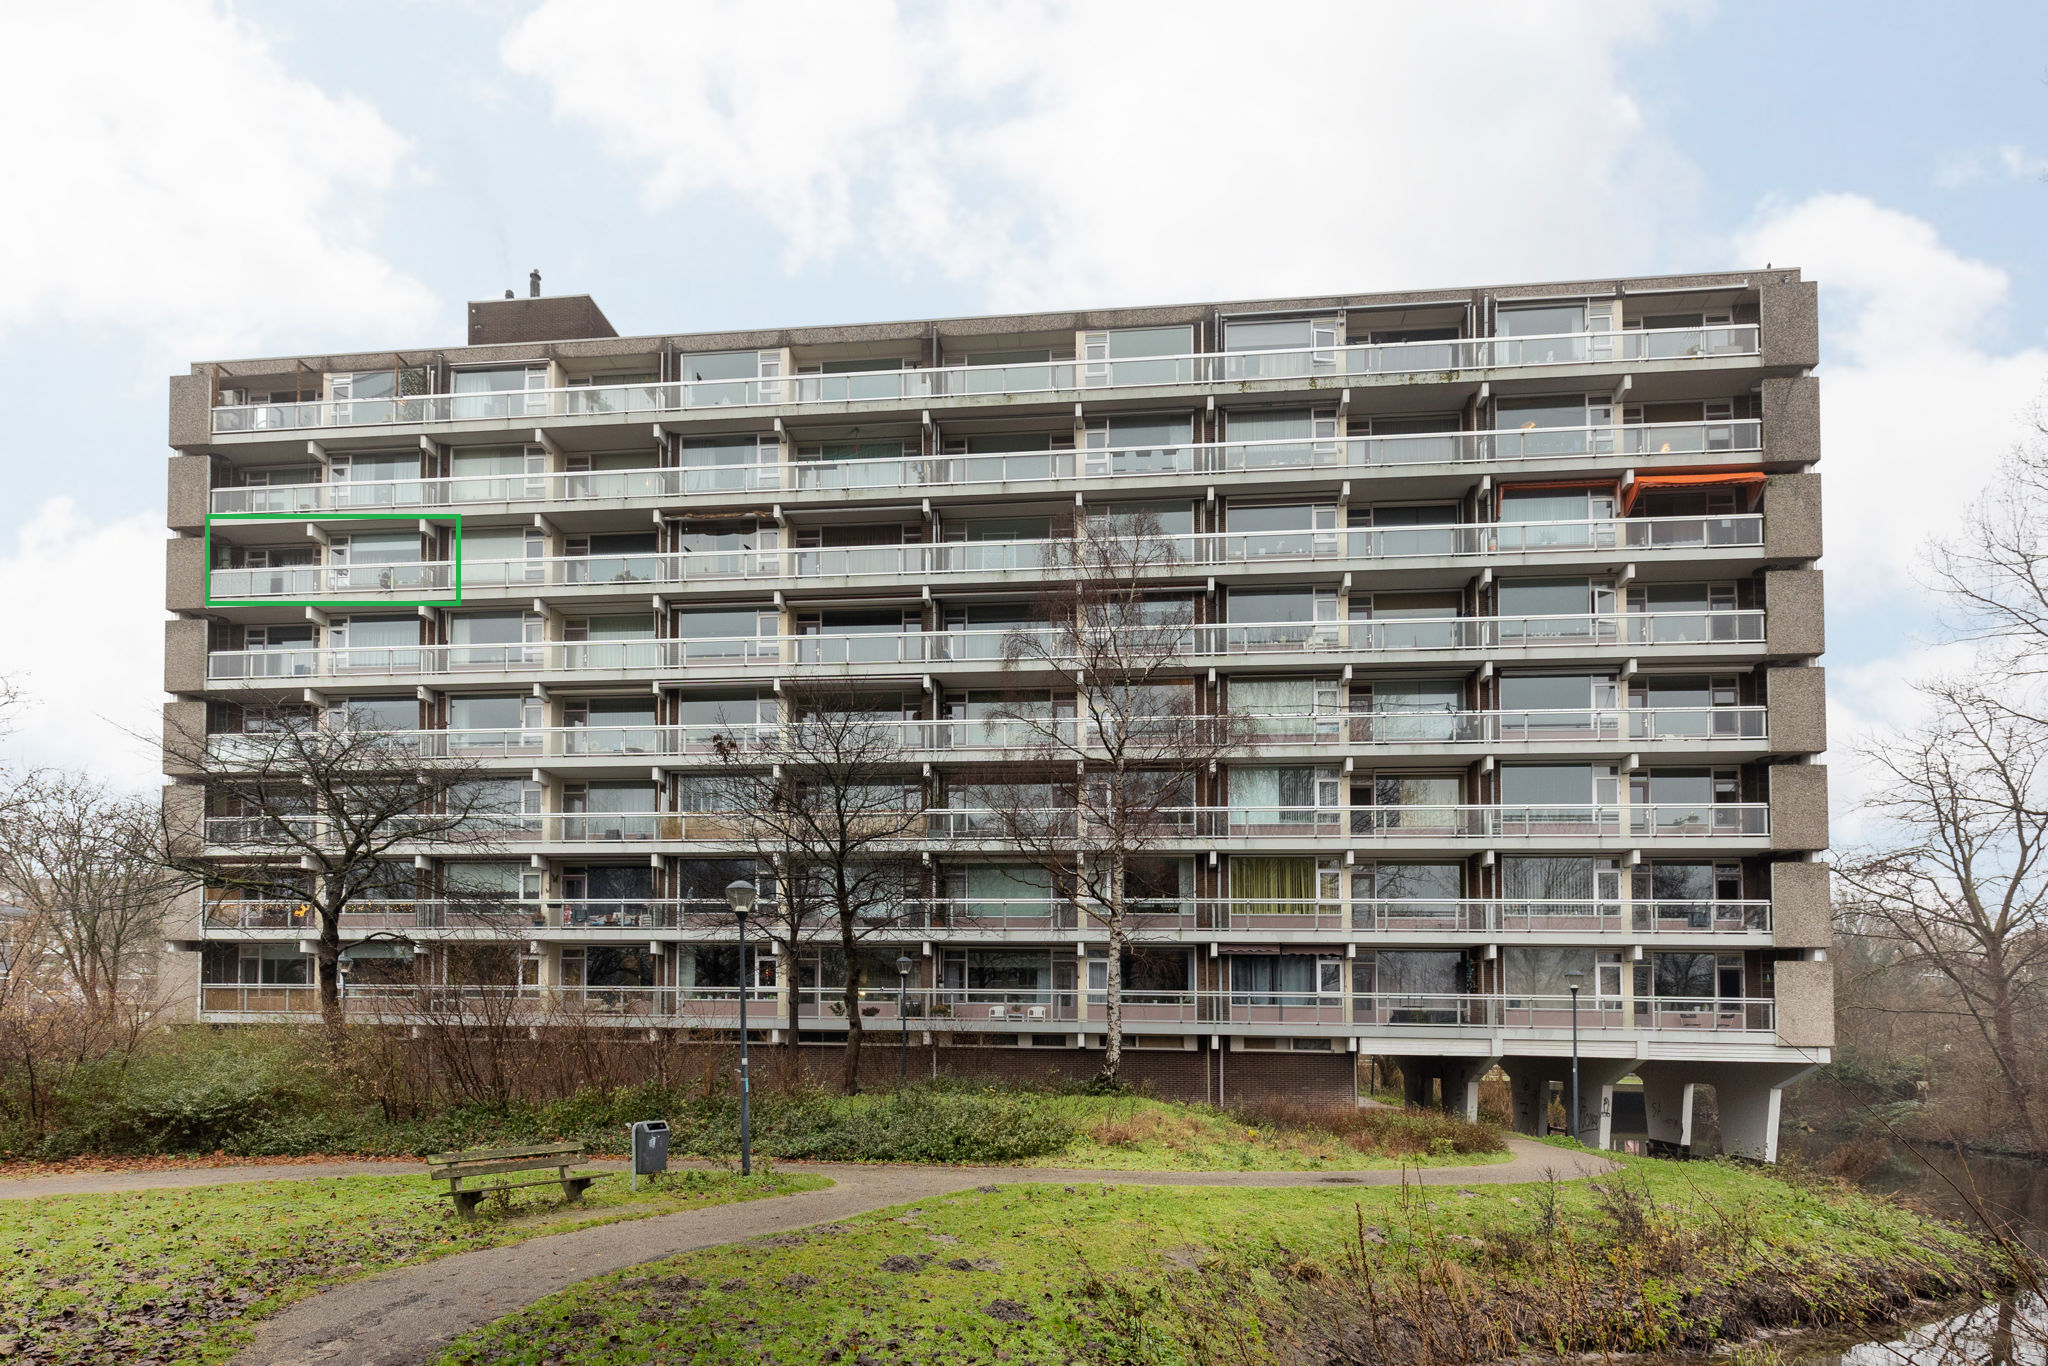 Bekijk foto 1/9 van apartment in Haarlem